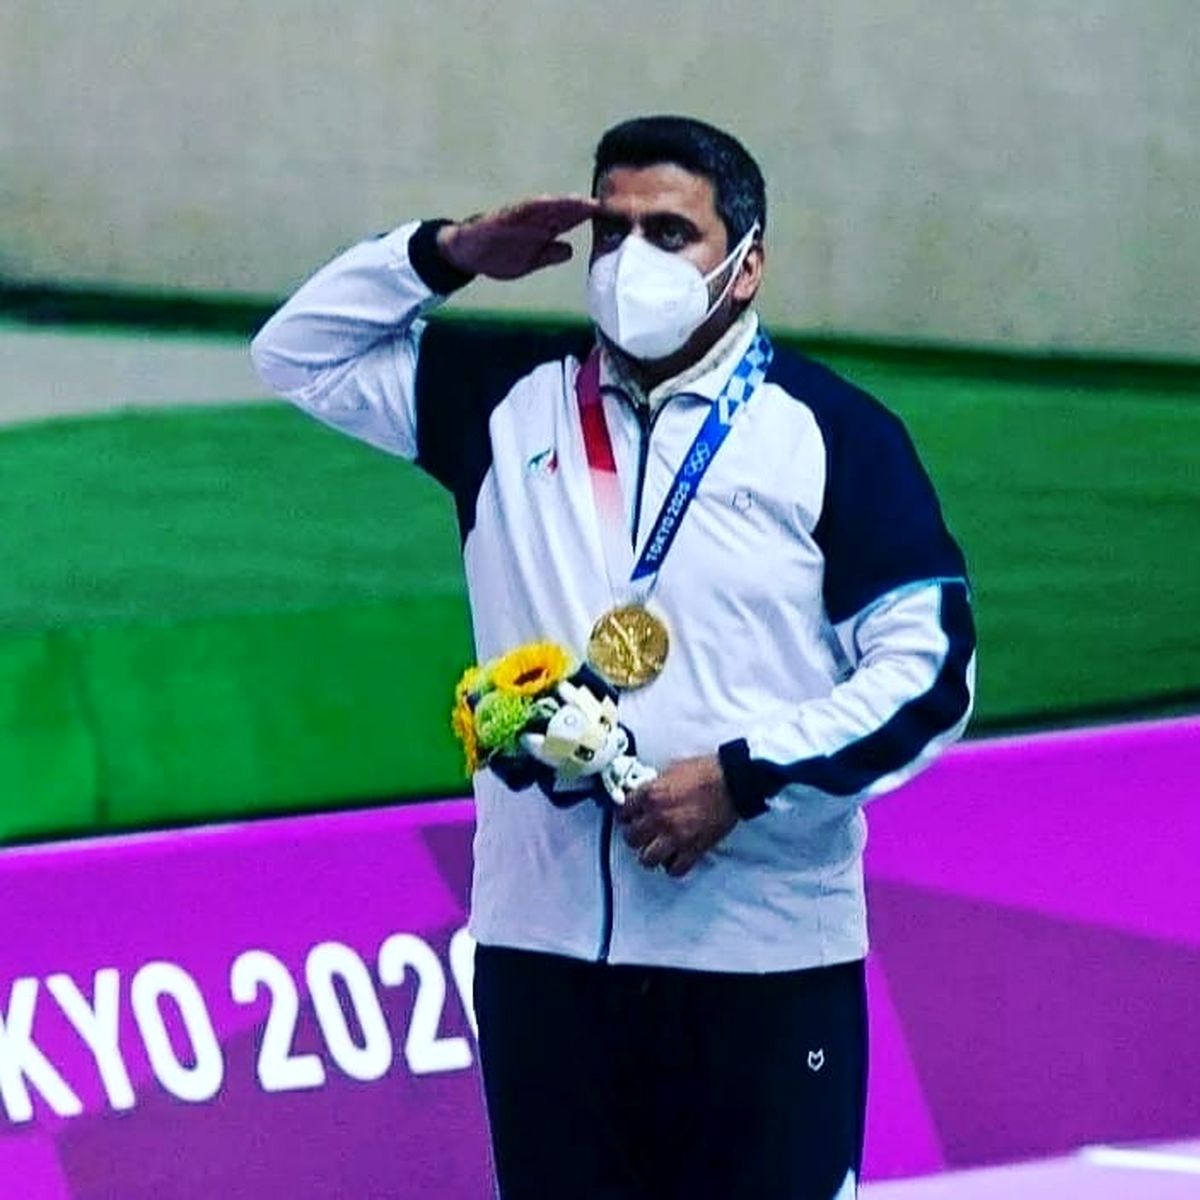 جواد فروغی نامی است که در روزهای اخیر با کسب مدال طلای المپیک در توکیو در رشته تیراندازی با تپانچه 10 متر مردان خبرساز شد.